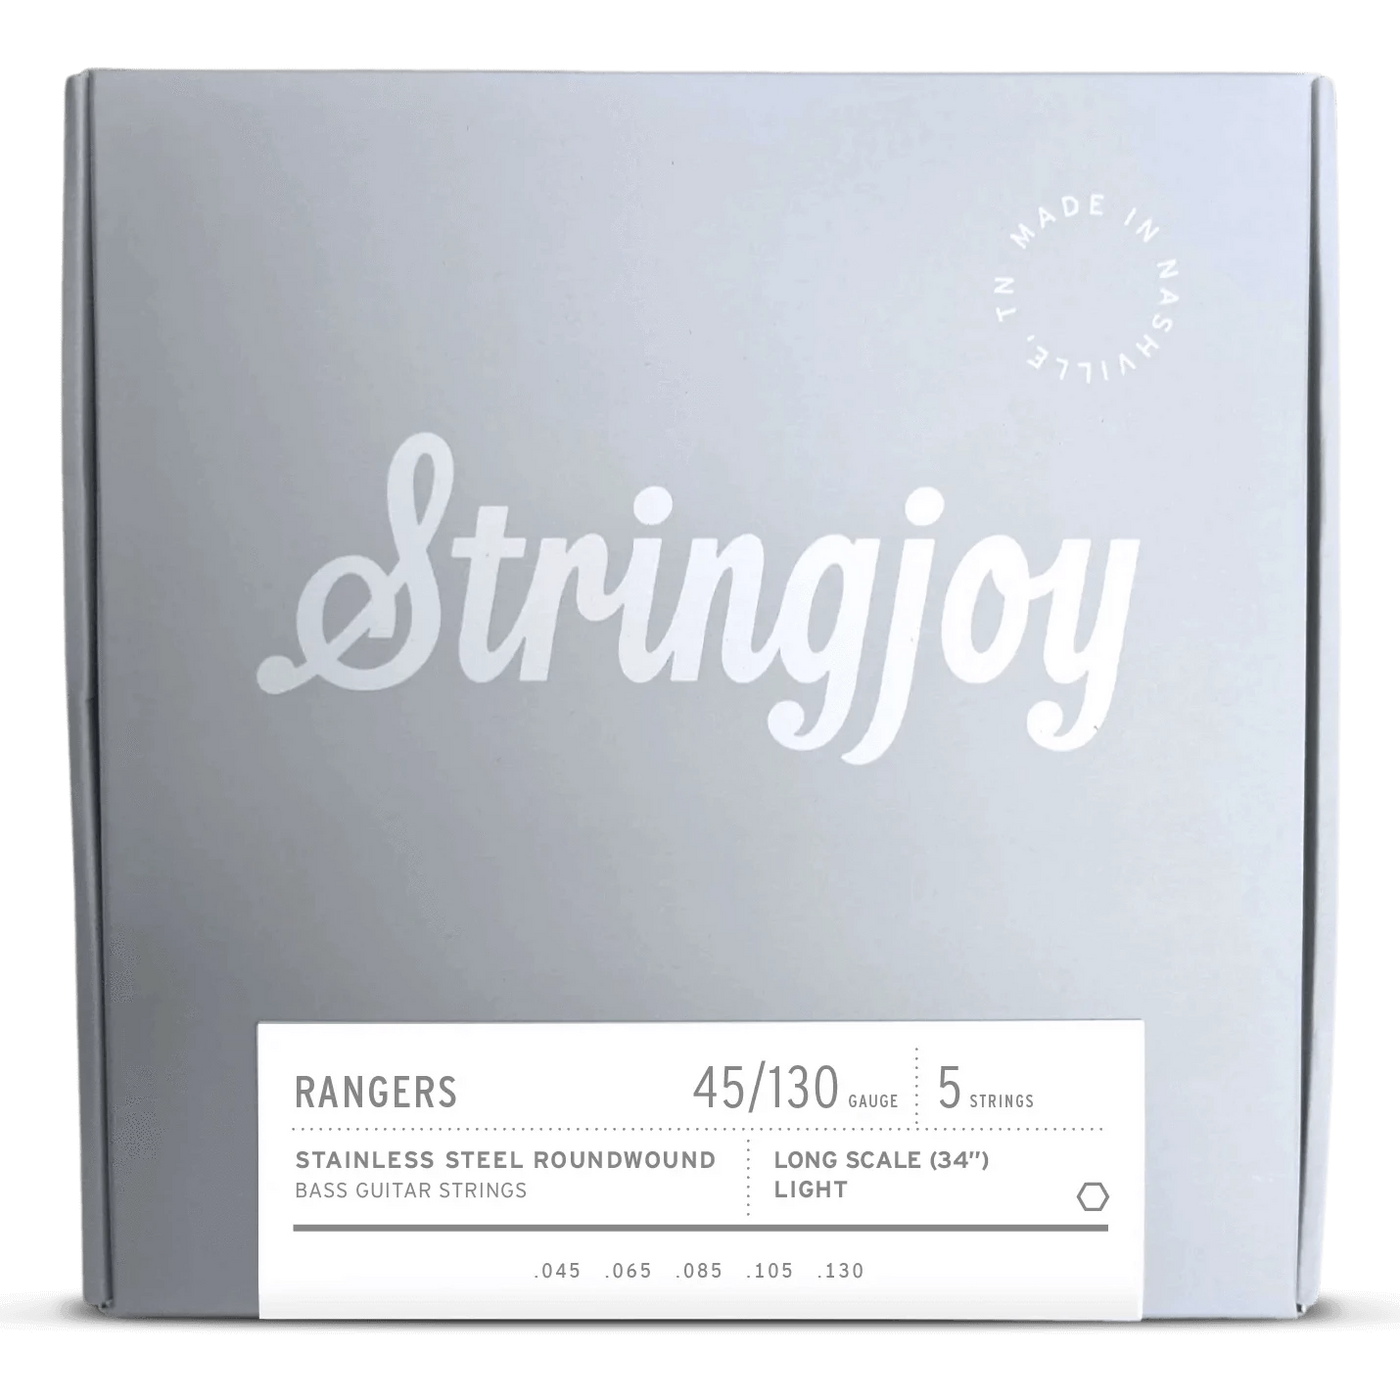 Stringjoy Long Scale Rangers Light Gauge 5 (45-130) Cuerdas de Bajo Eléctrico Acero Inoxidable